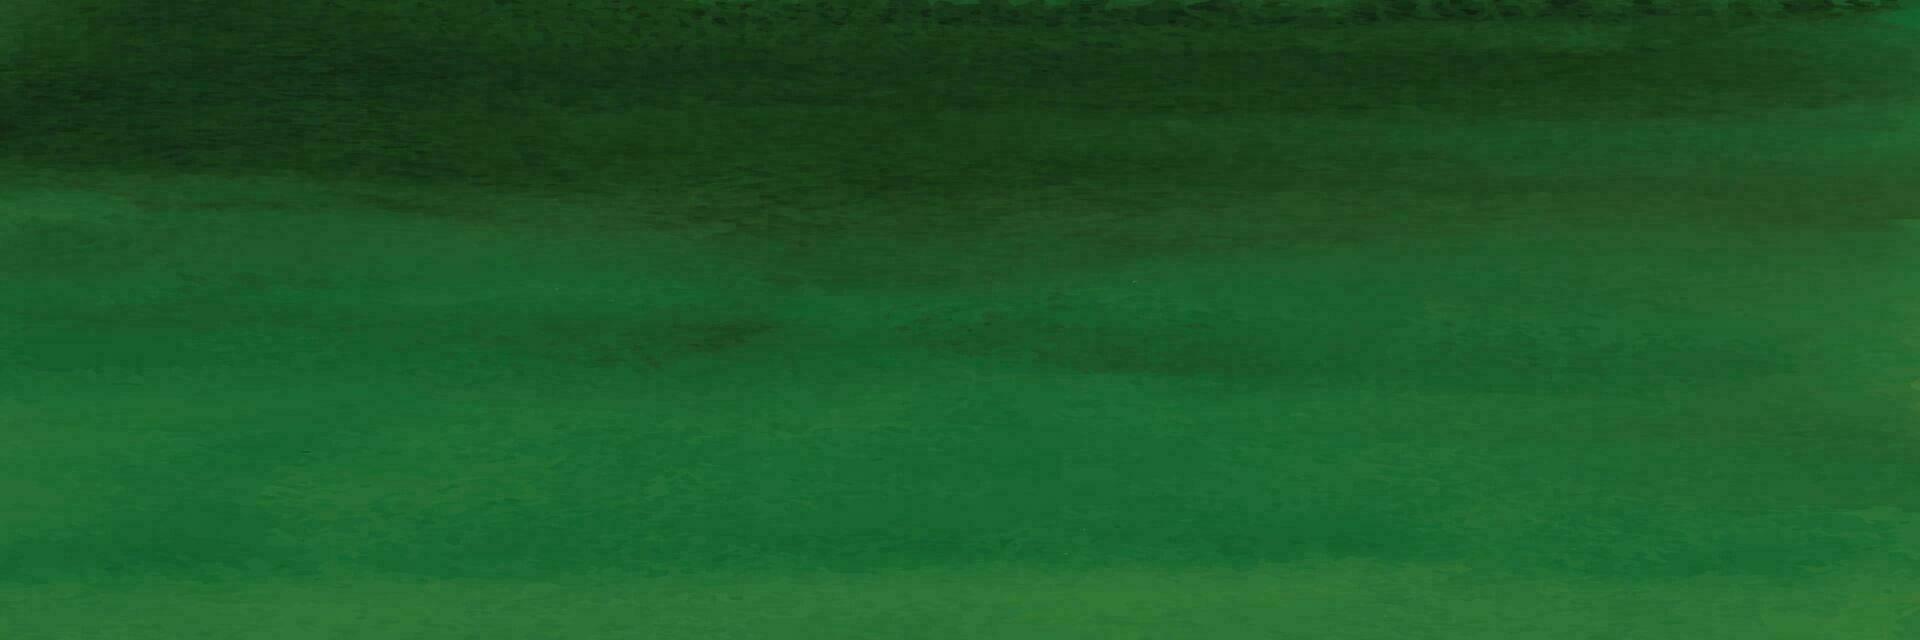 Grün Hintergrund von Aquarell Flecken elegant Weihnachten Hintergrund vektor